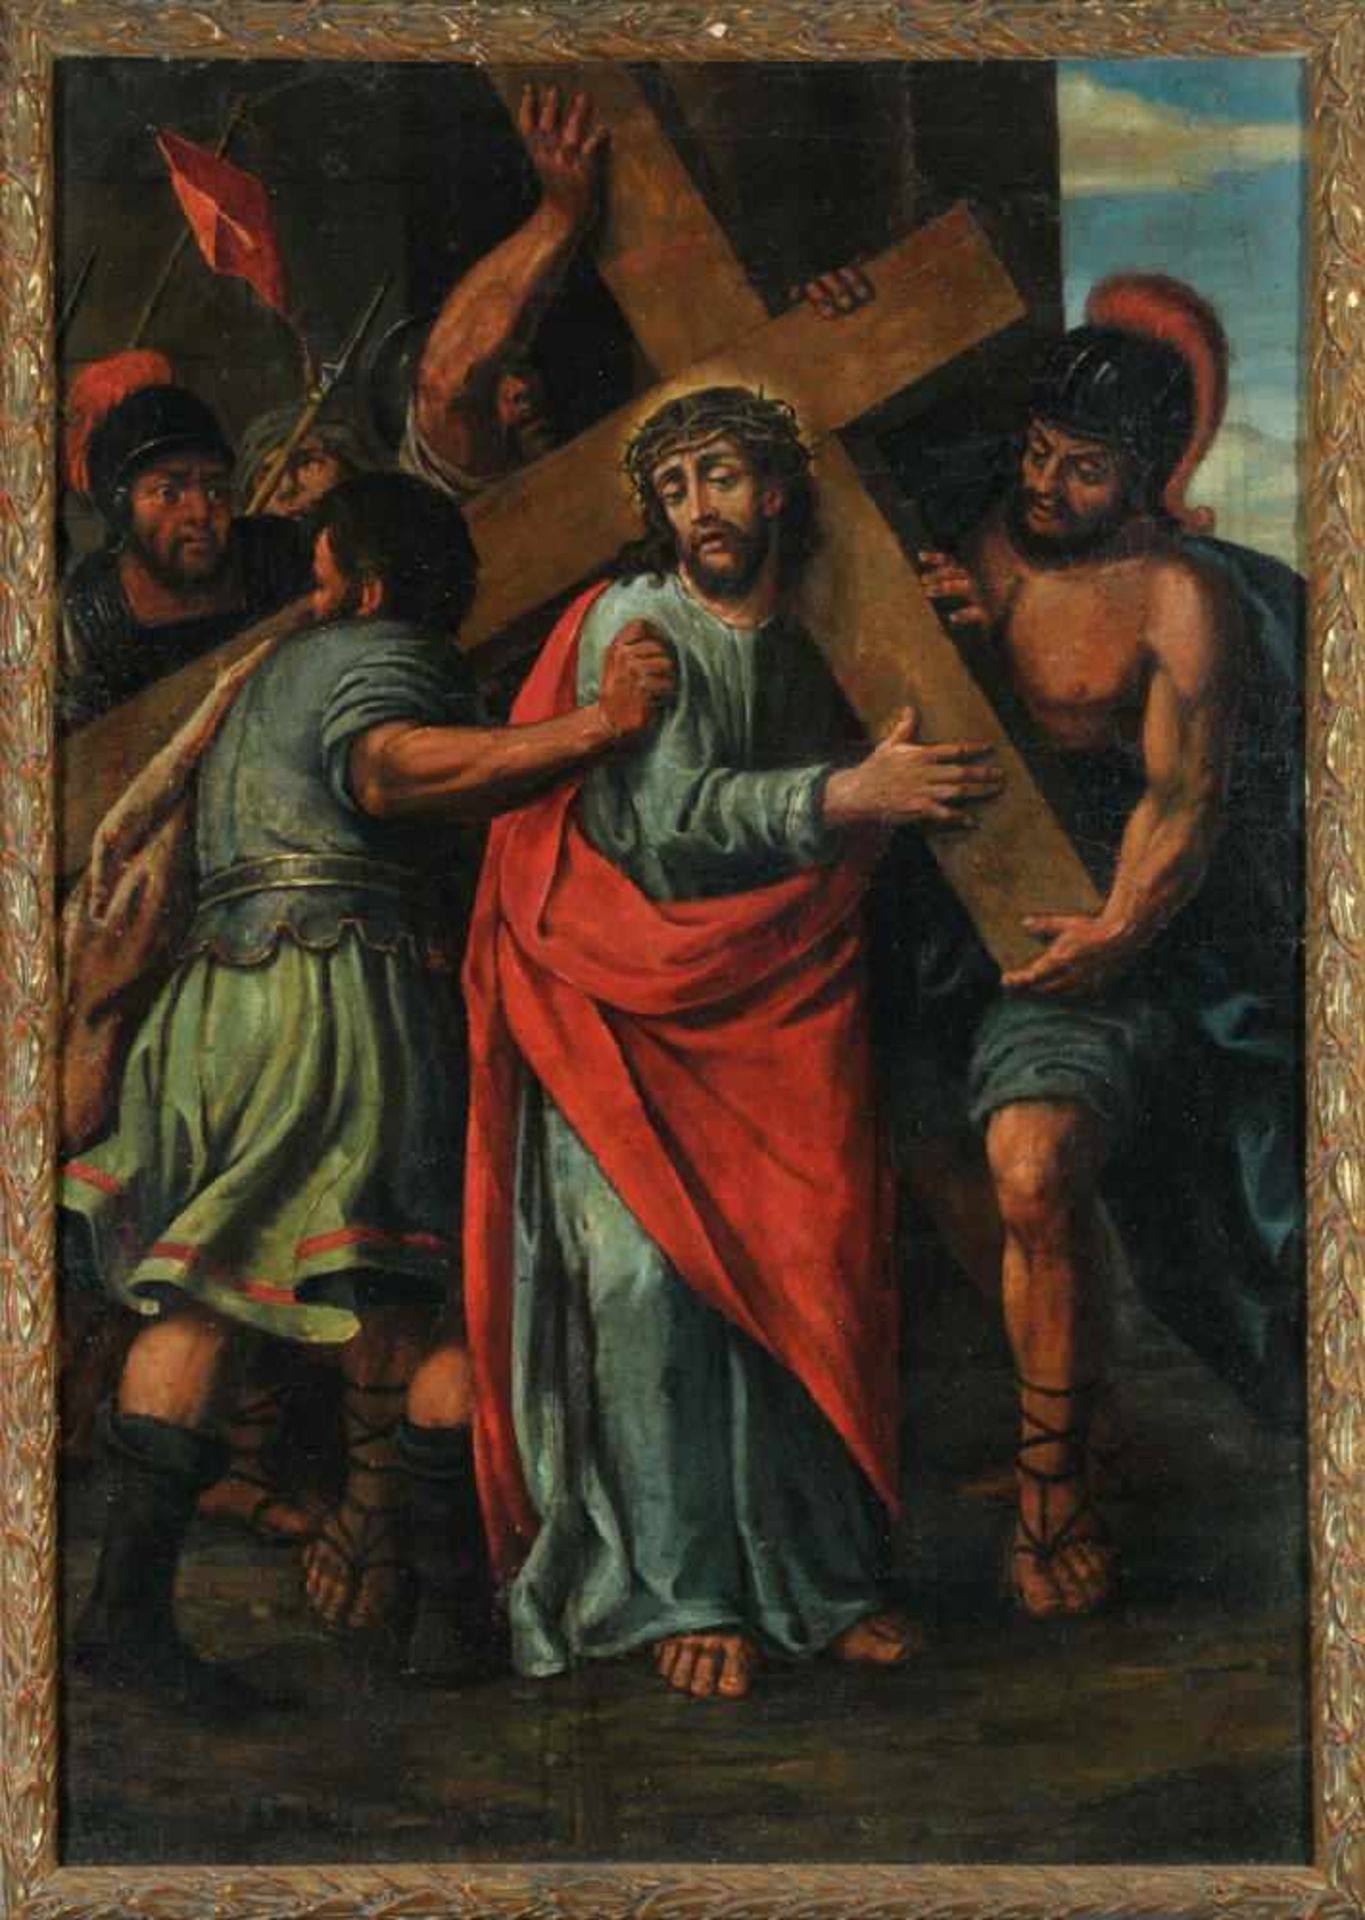 Bildnismaler des 17./18. Jh.Öl/Lwd auf Hartfaser gez., 109 x 76 cm, " Christus trägt das Kreuz ",